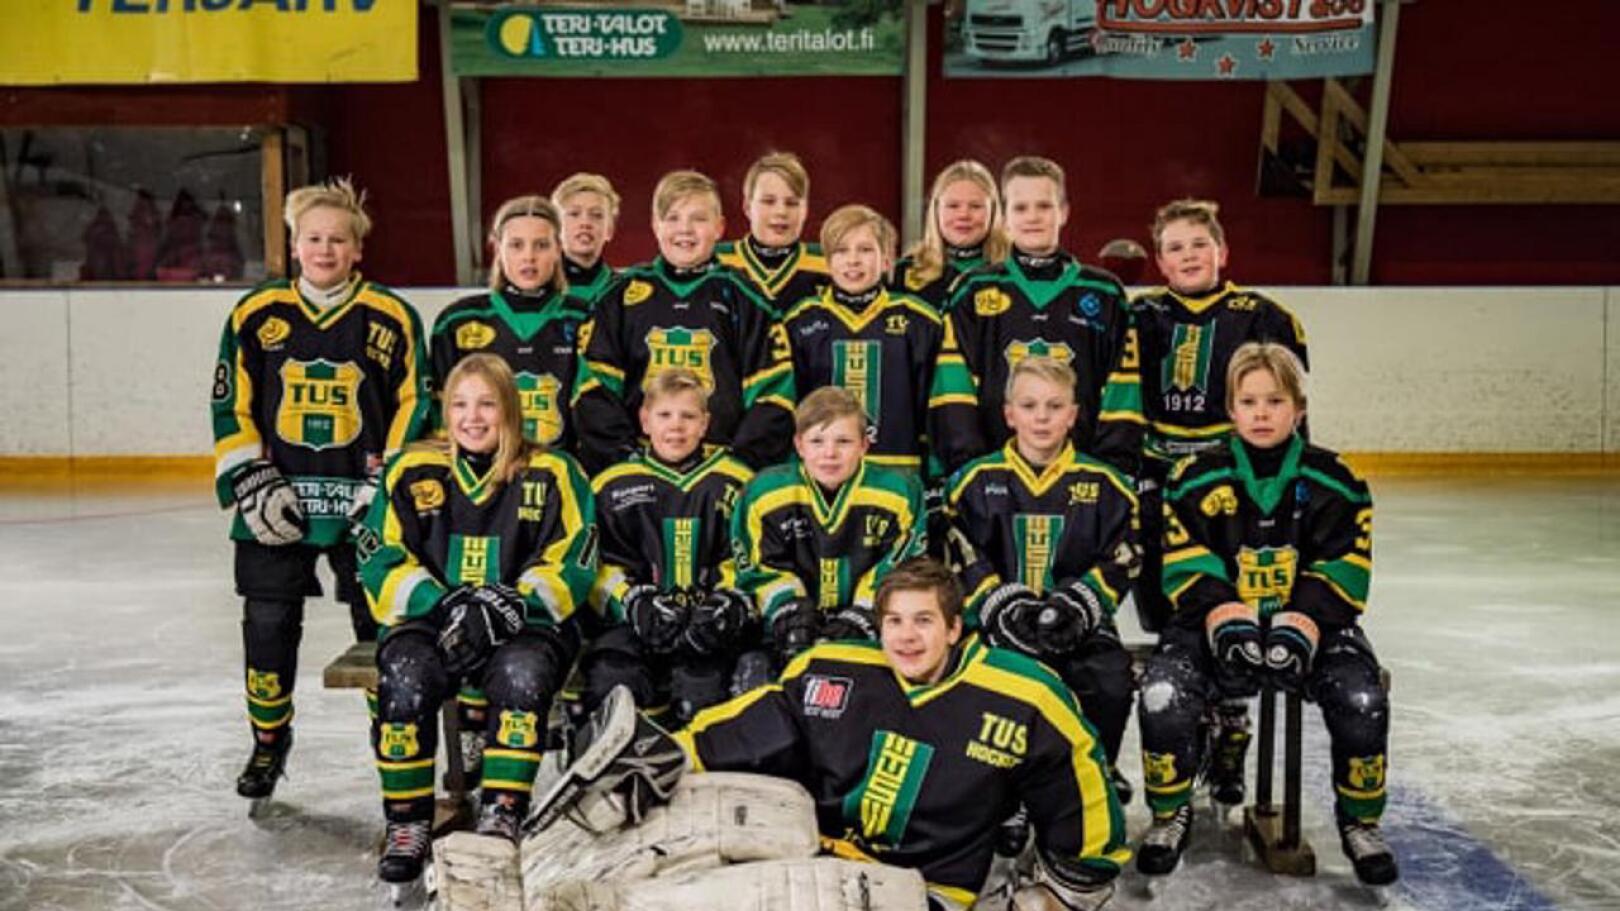 Terjärv Ungdoms Sportklubbin E1-ikäisten jääkiekkojoukkueessa pelaa useita halsualaisia, kaustislaisia ja veteliläisiä nuoria. Joukkuetta valmentaa kaustislainen Juha-Matti Pollari. 